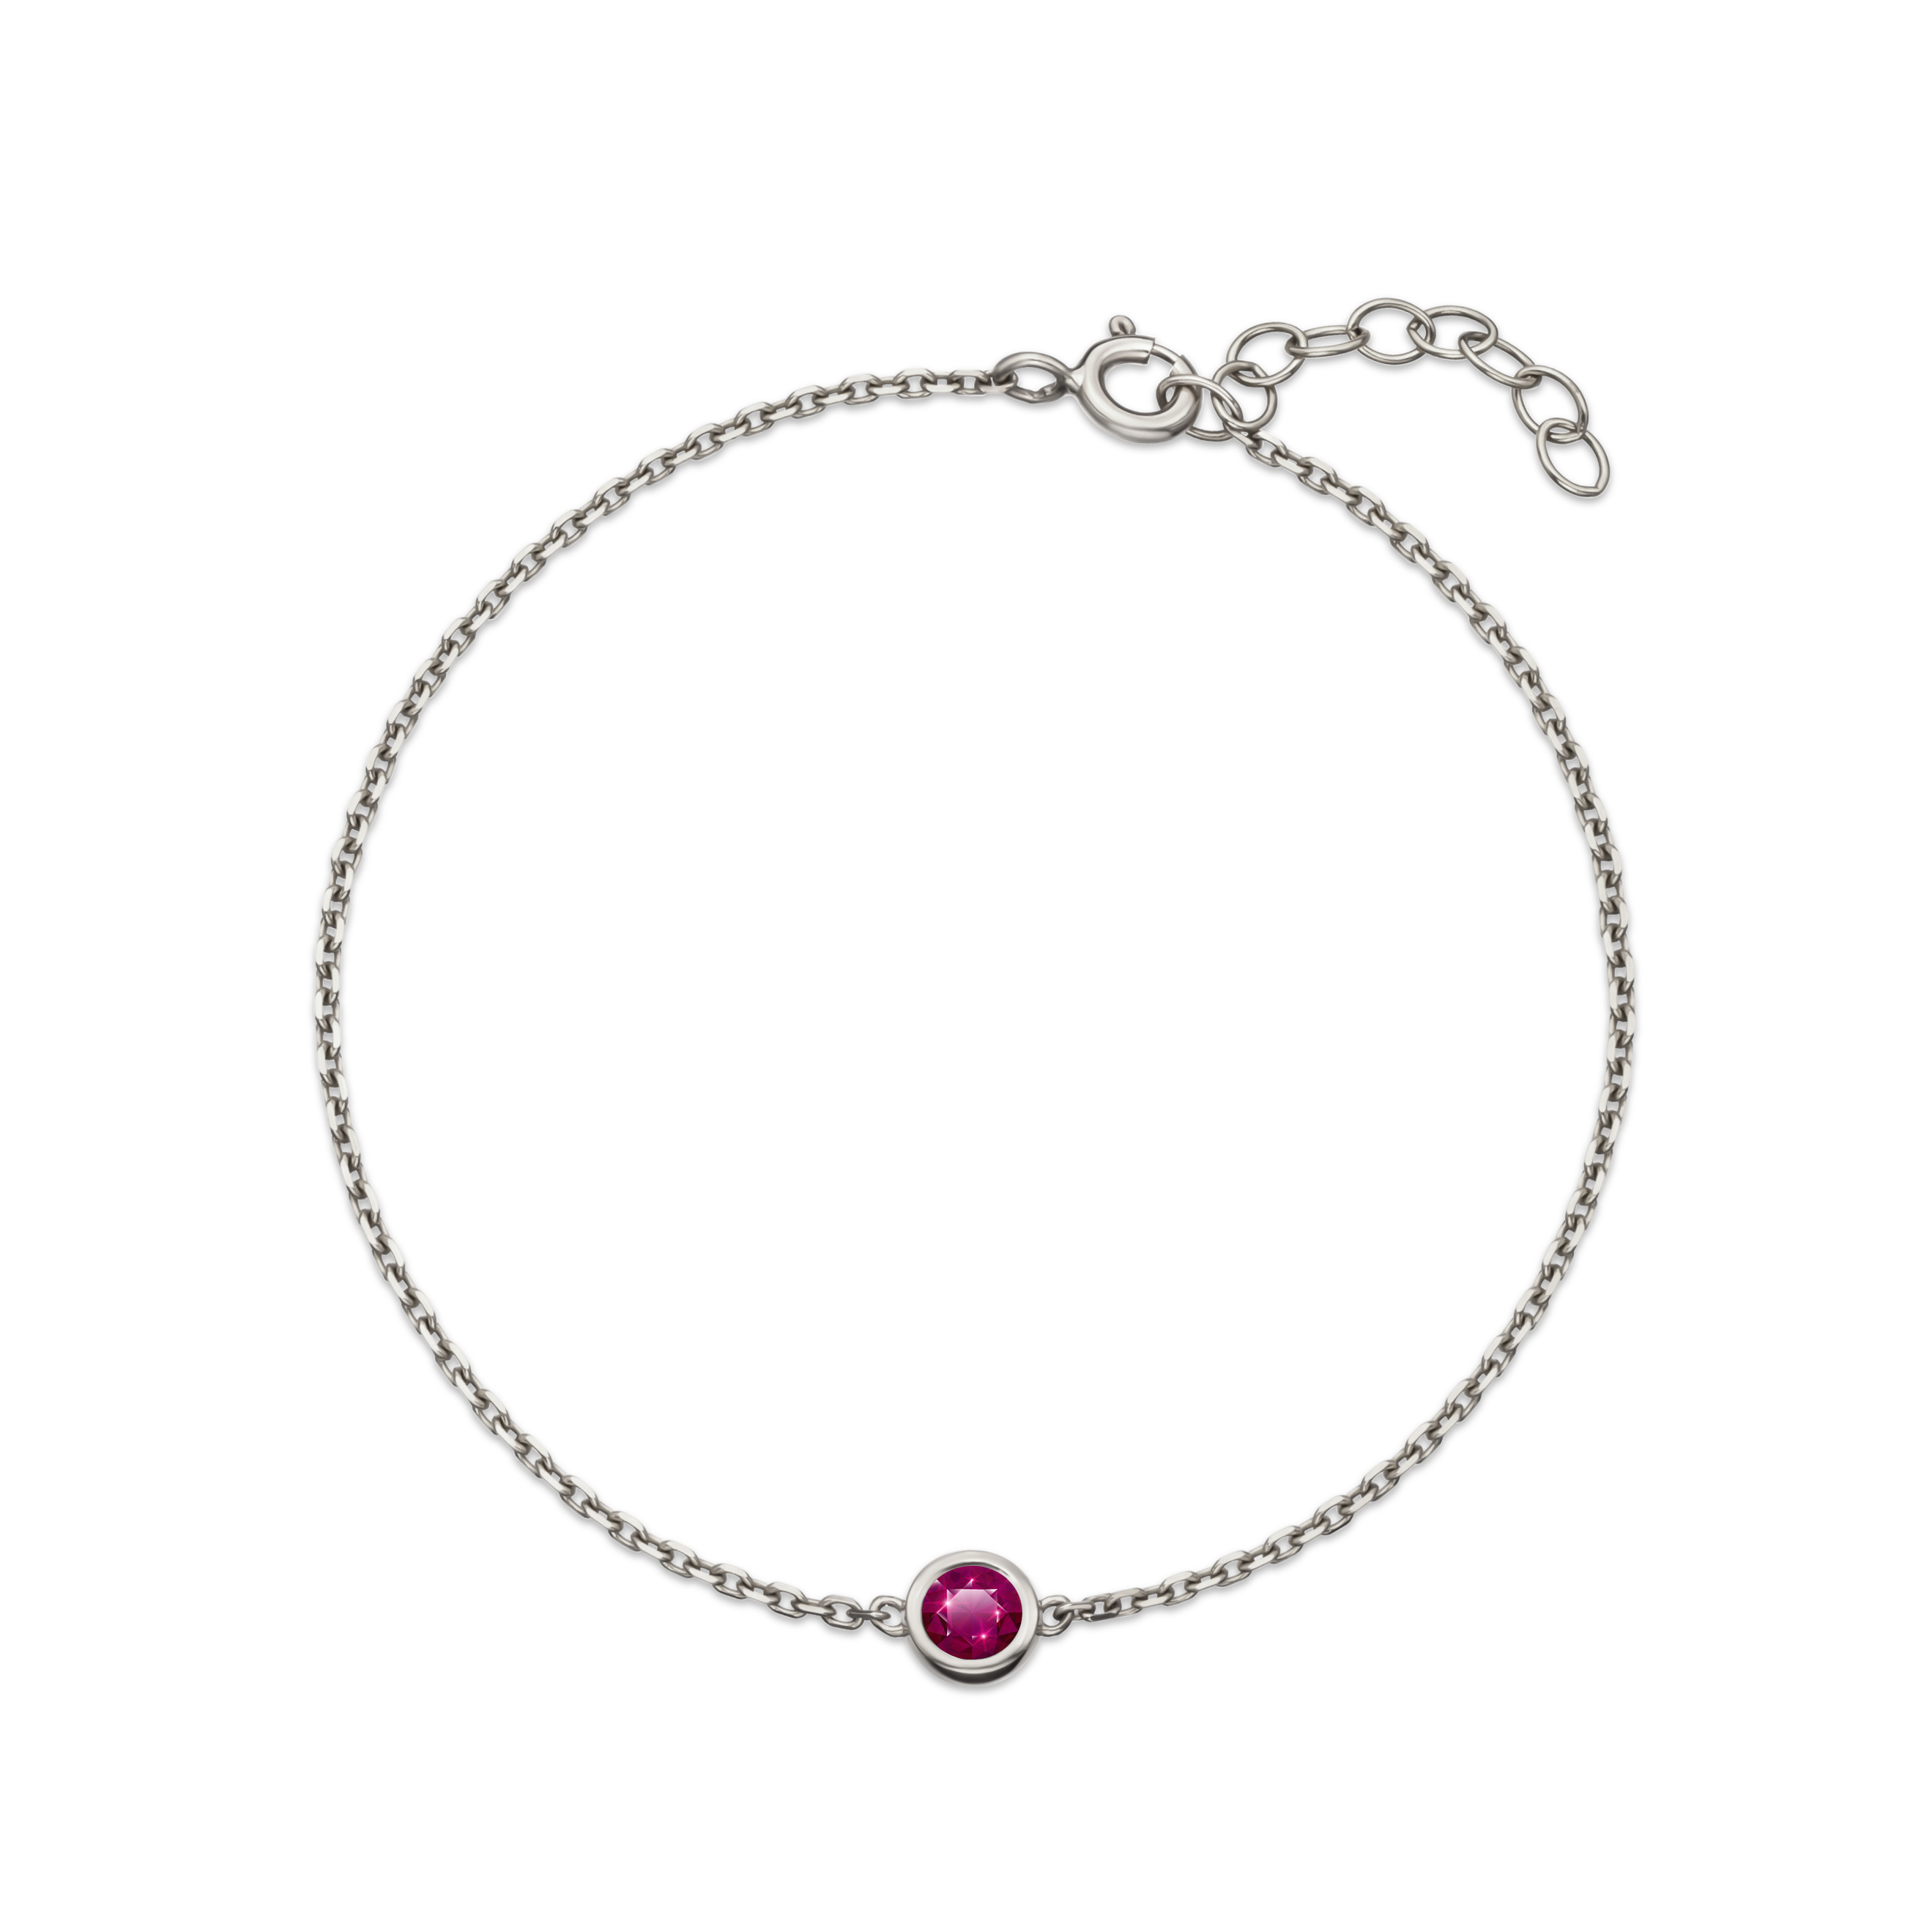 Ruby birthstone bracelet